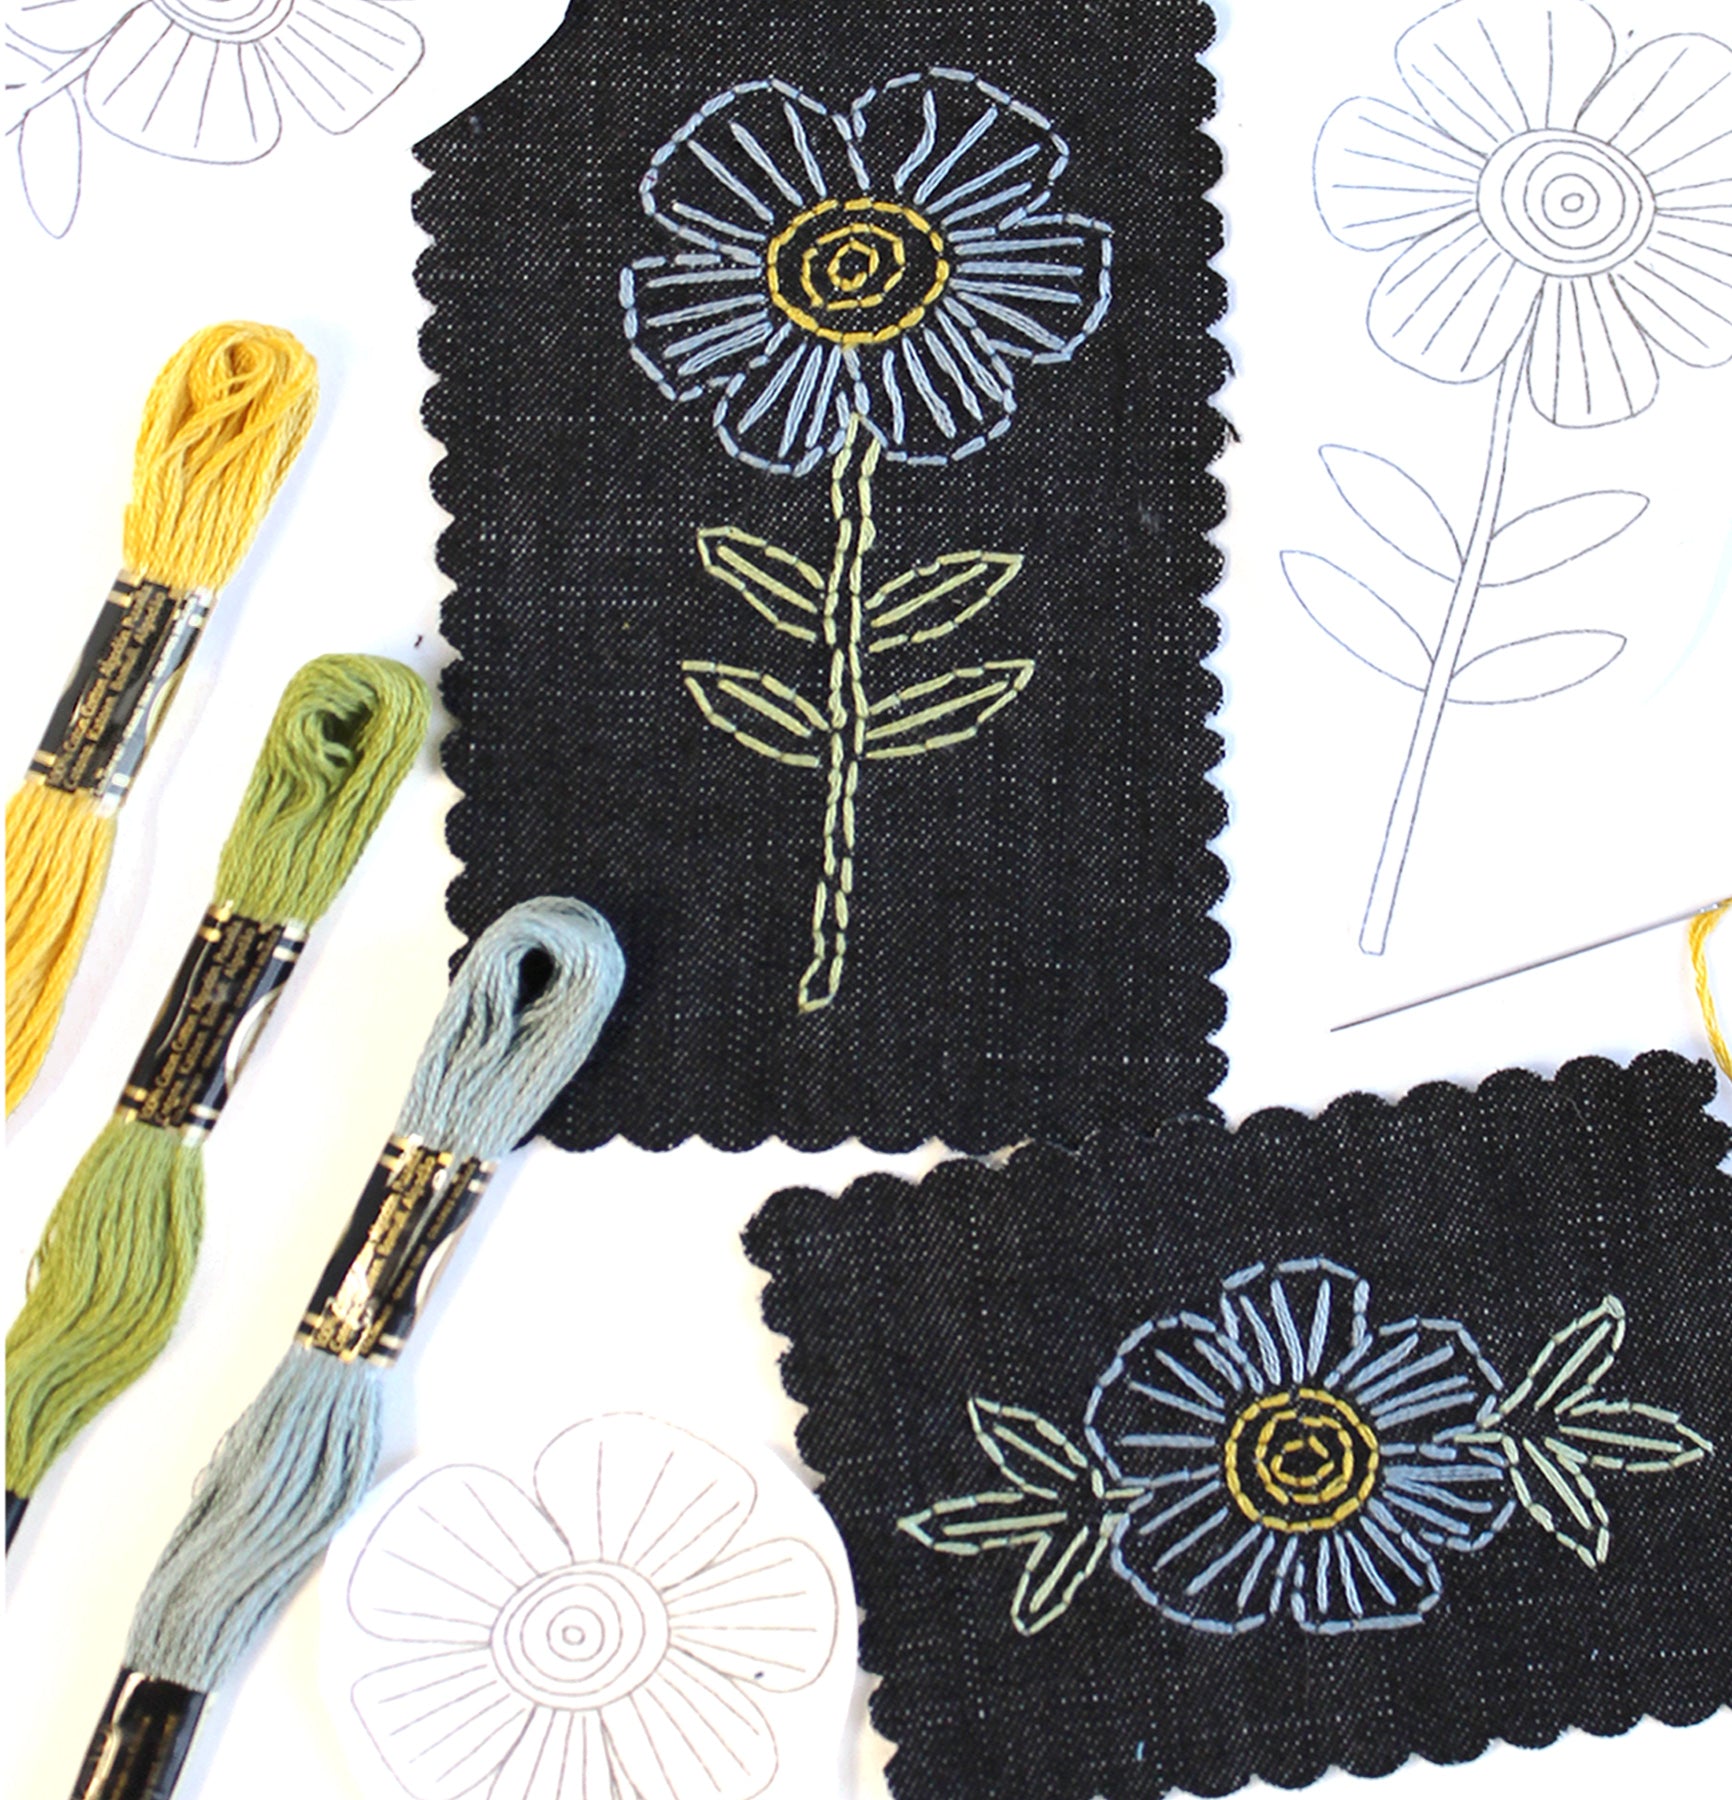 Stick & Stitch Kits- New Bloom